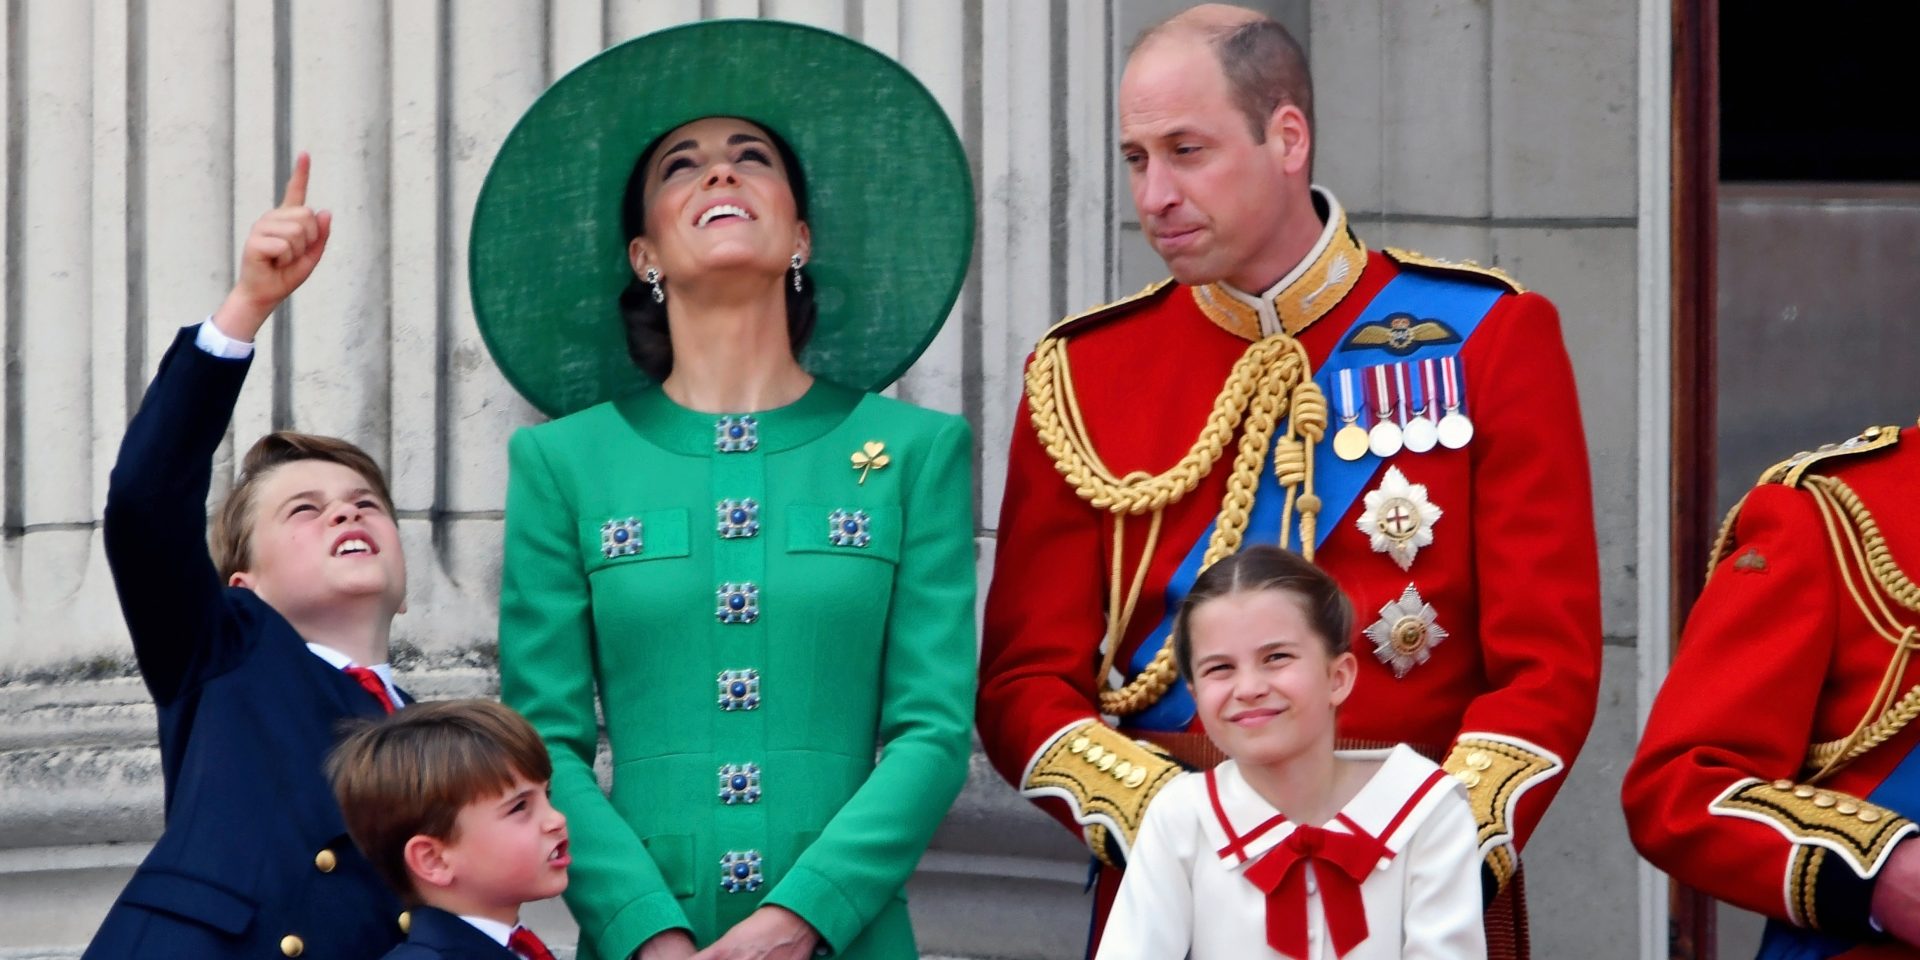 Какие титулы получат дети принца Уильяма и Кейт Миддлтон, когда их родители станут королем и королевой?